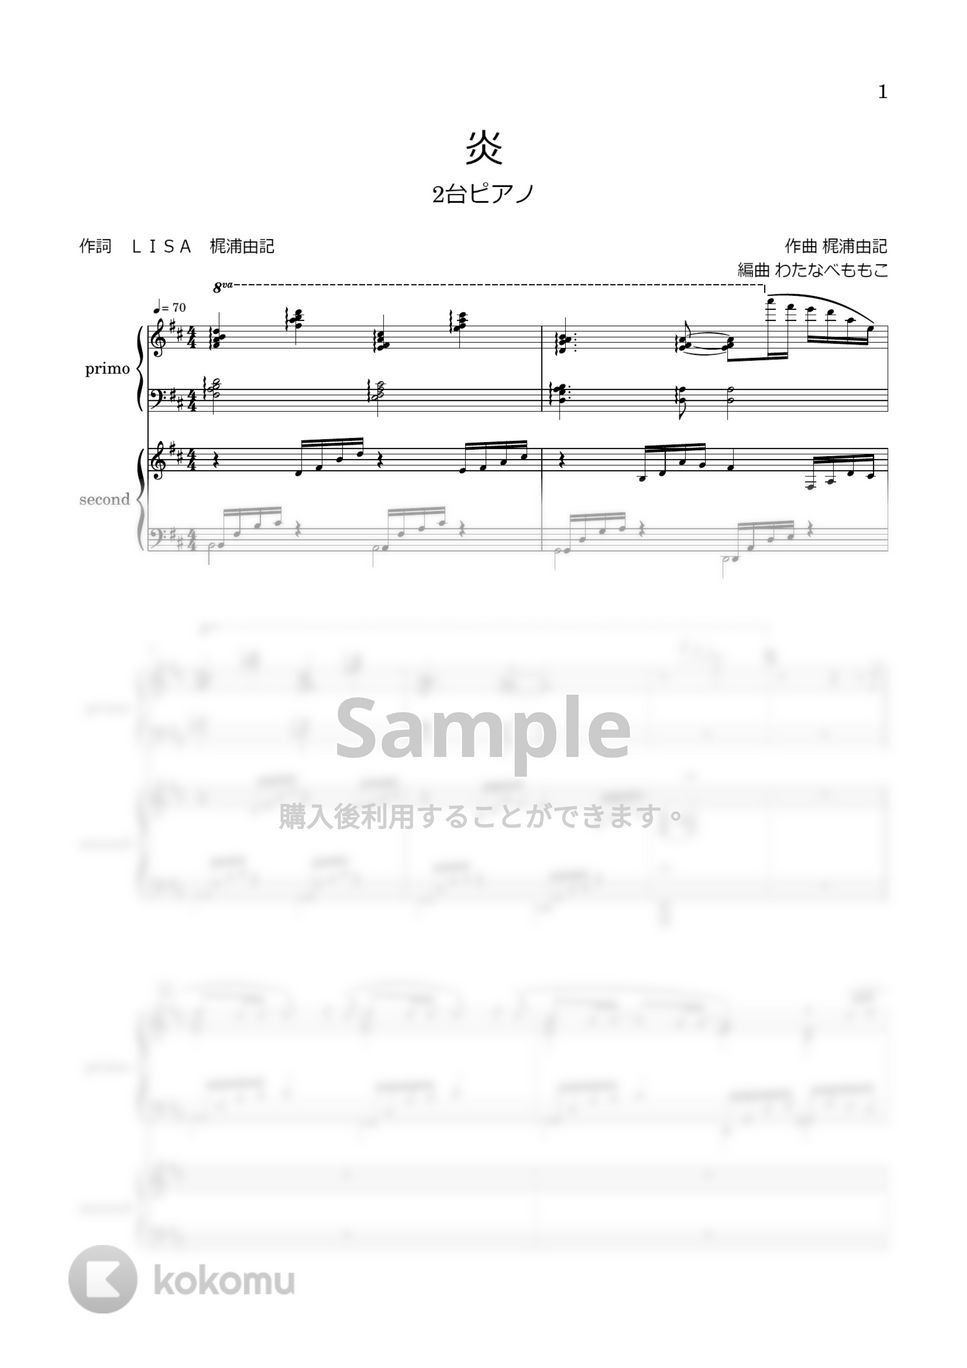 LiSA - 炎 (2台ピアノ) by わたなべももこ